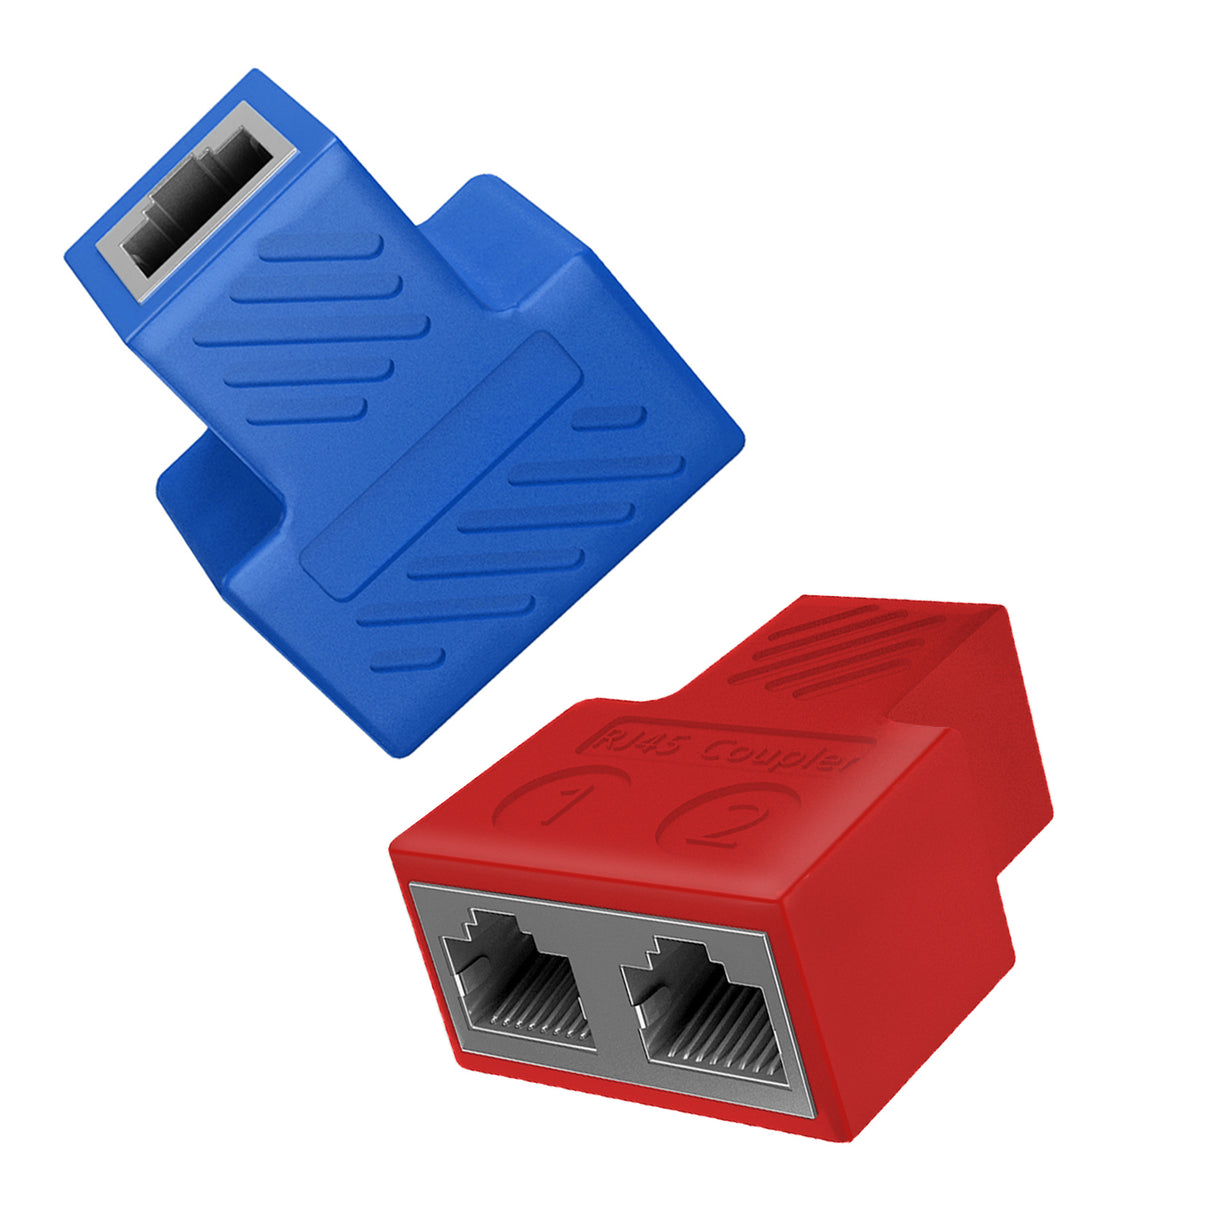 Ethernet Splitter 1 to 2 RJ45 Extender [2 Devices Simultaneous